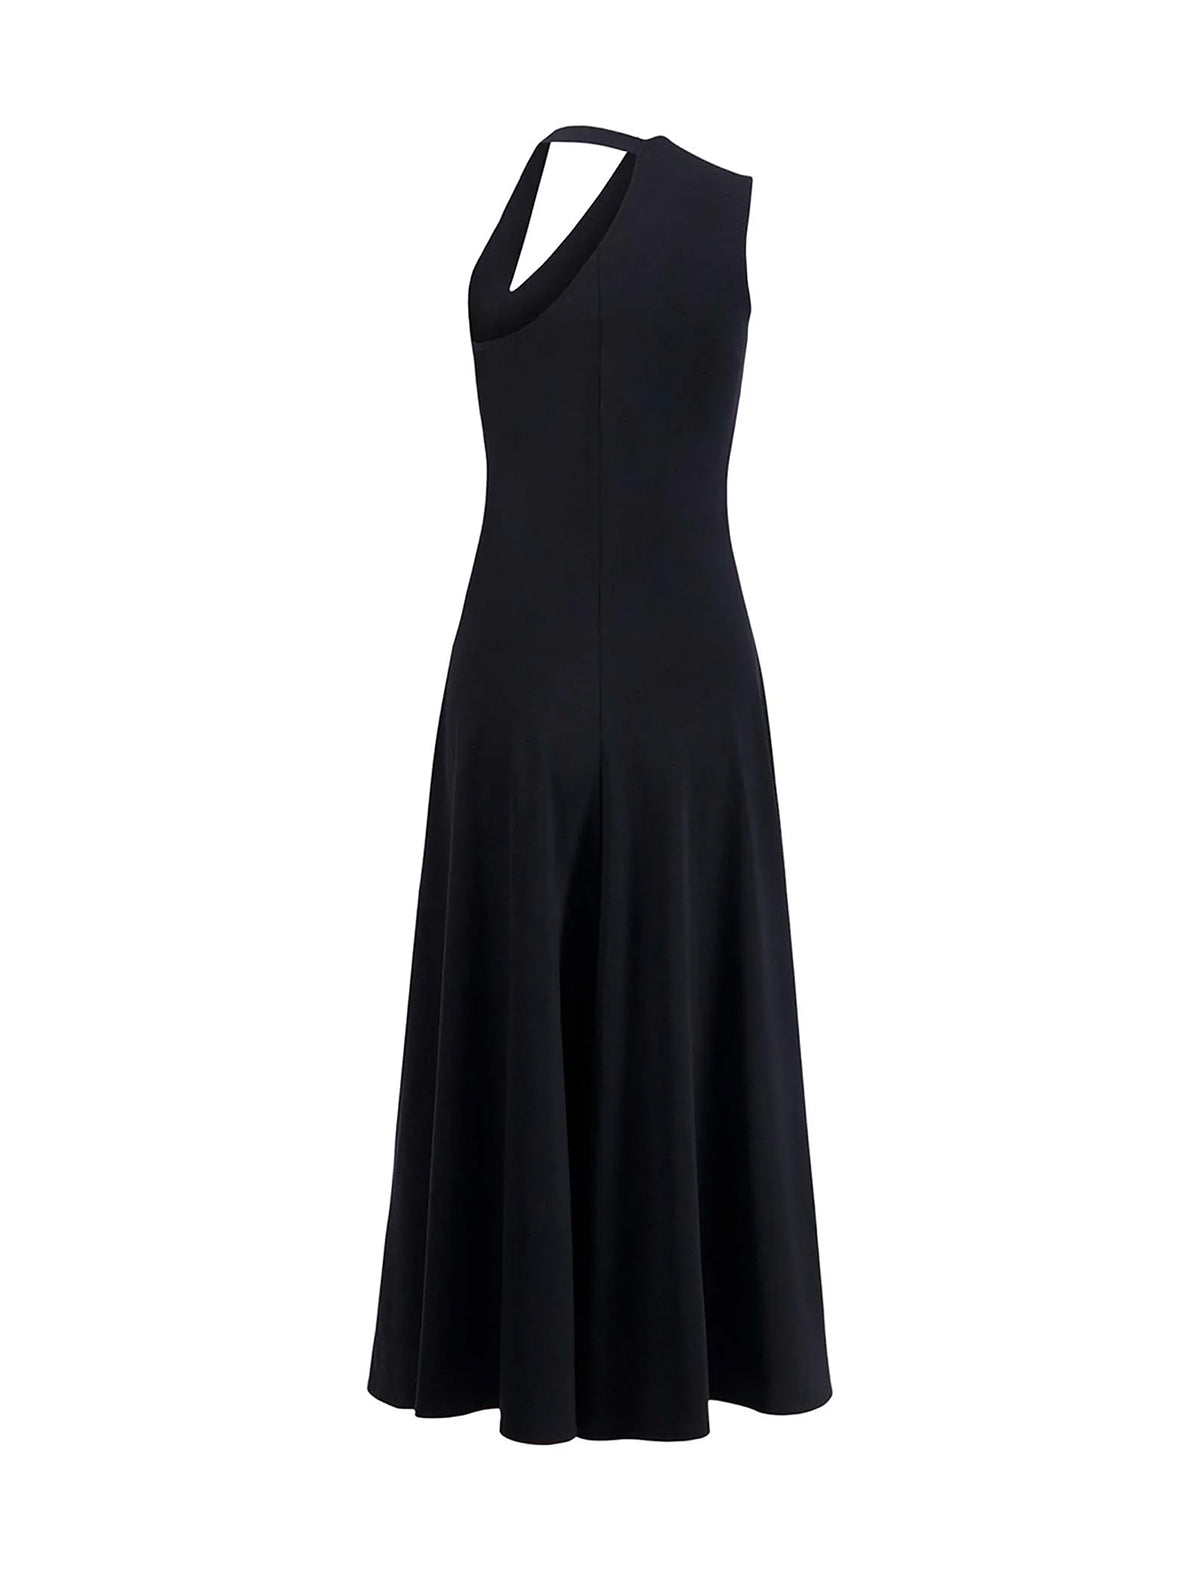 BEAUFILLE Triple Strap Dress in Black